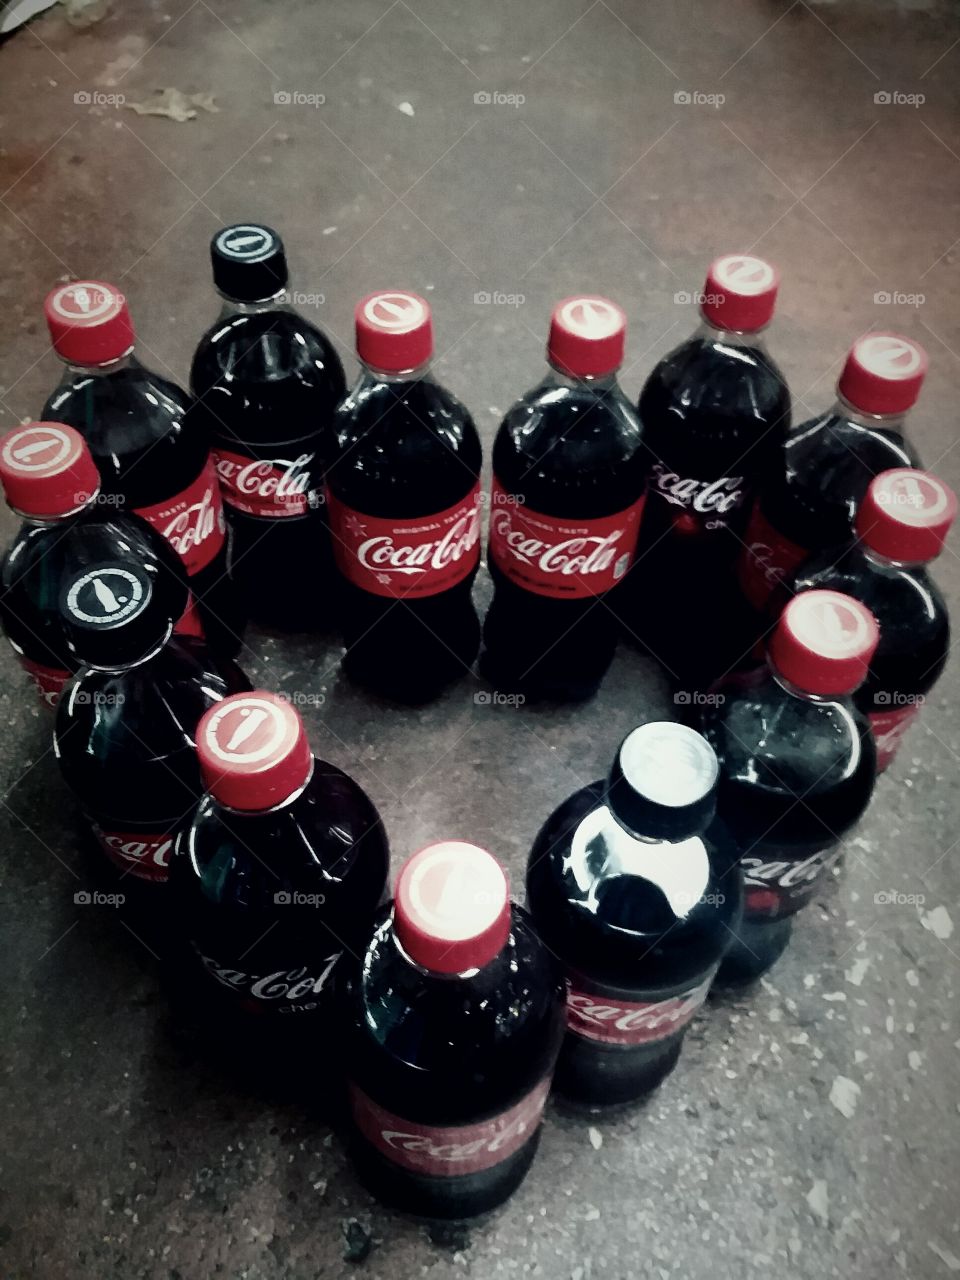 the love for Coca Cola